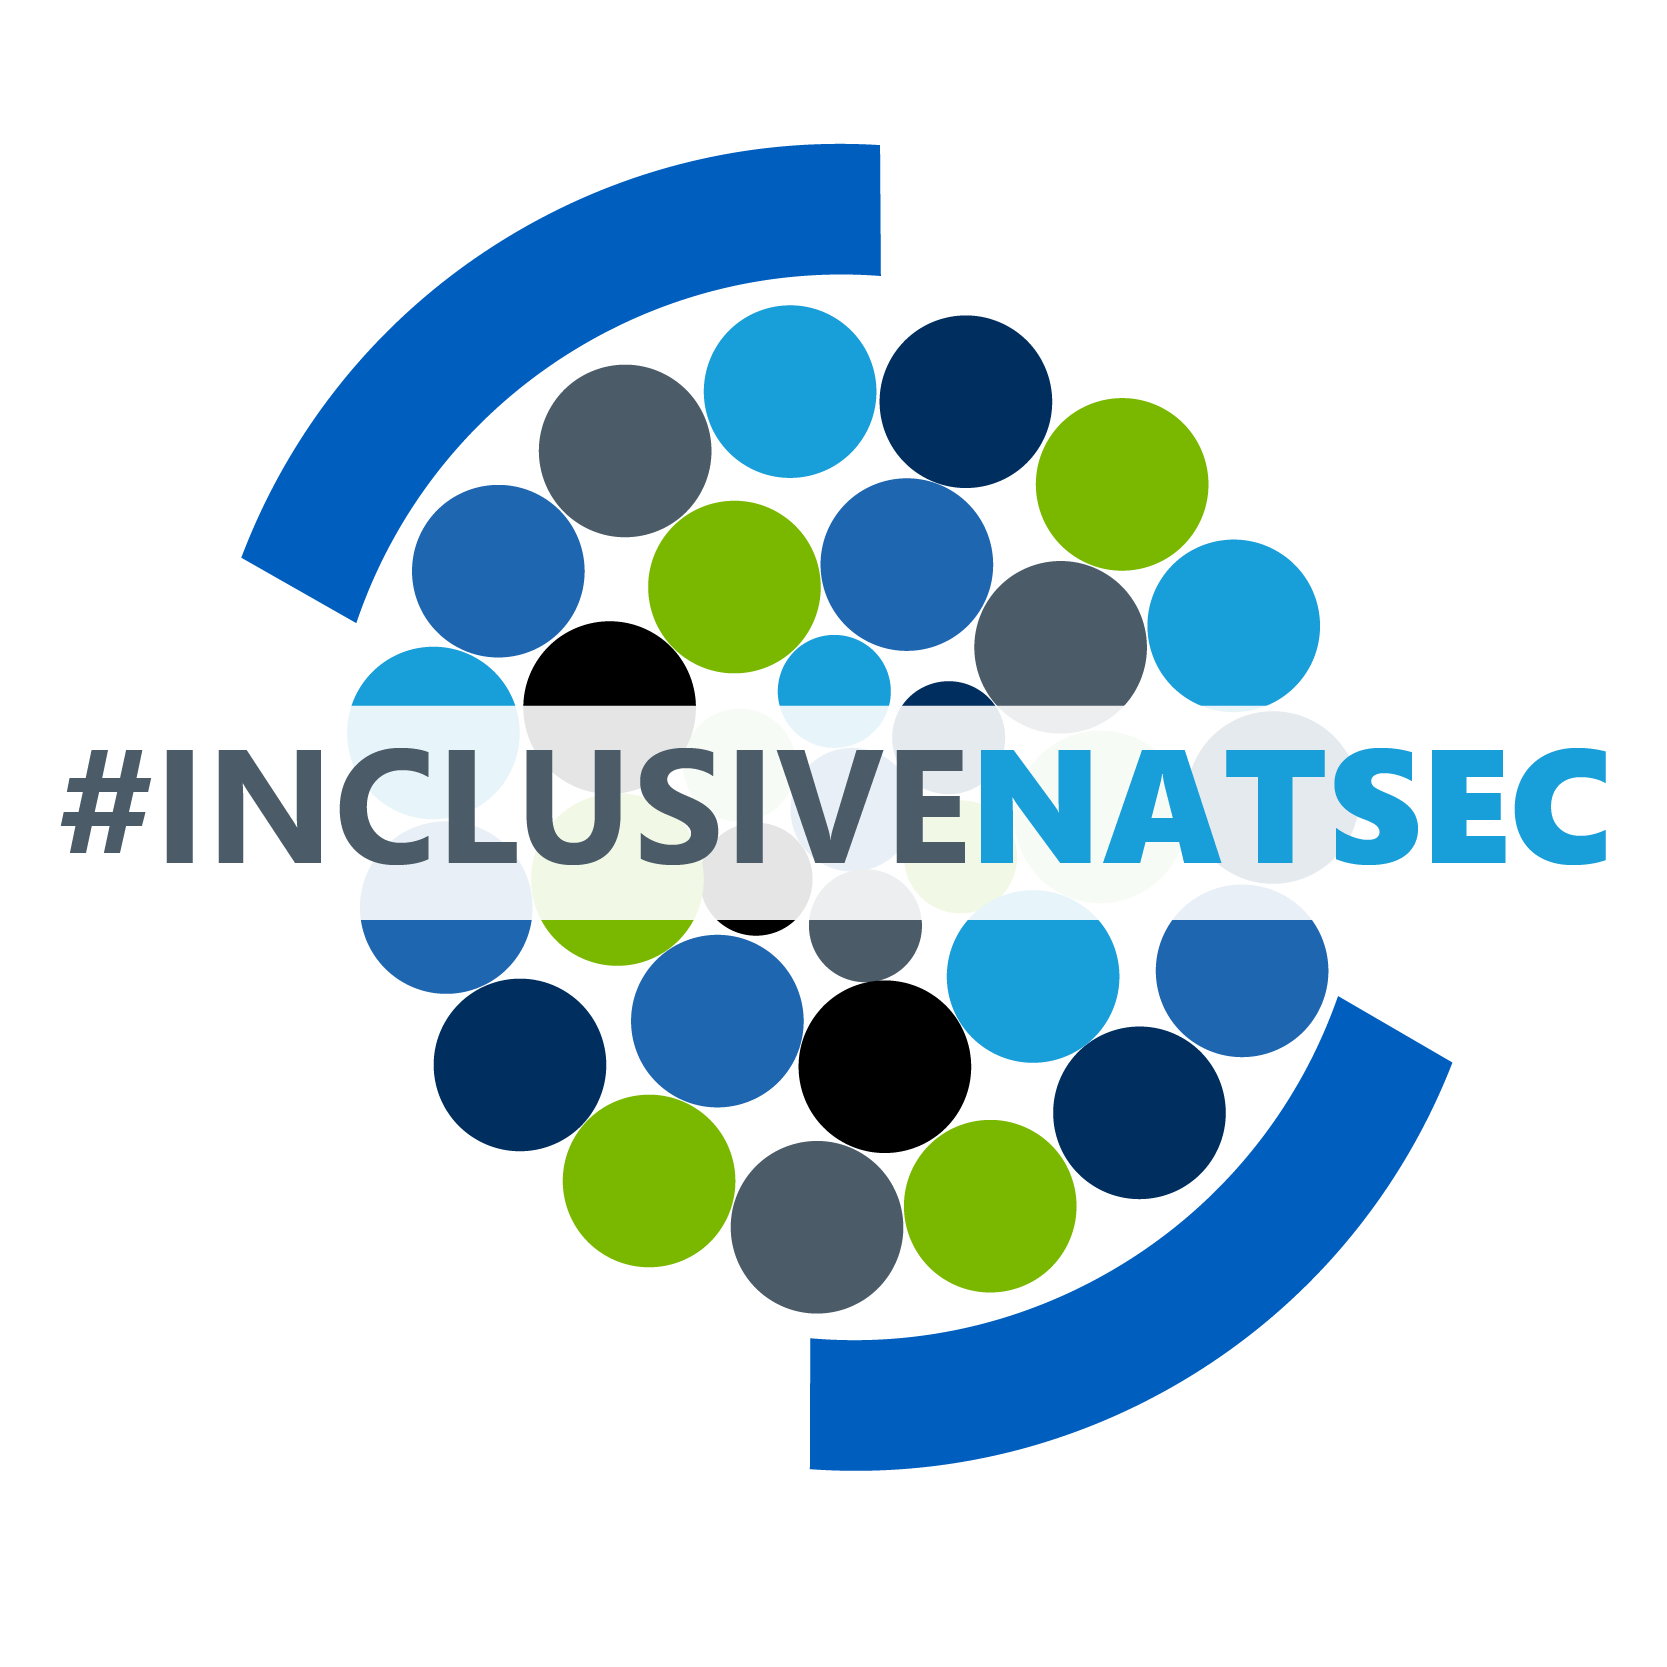 Inclusive NATSEC event graphic identity